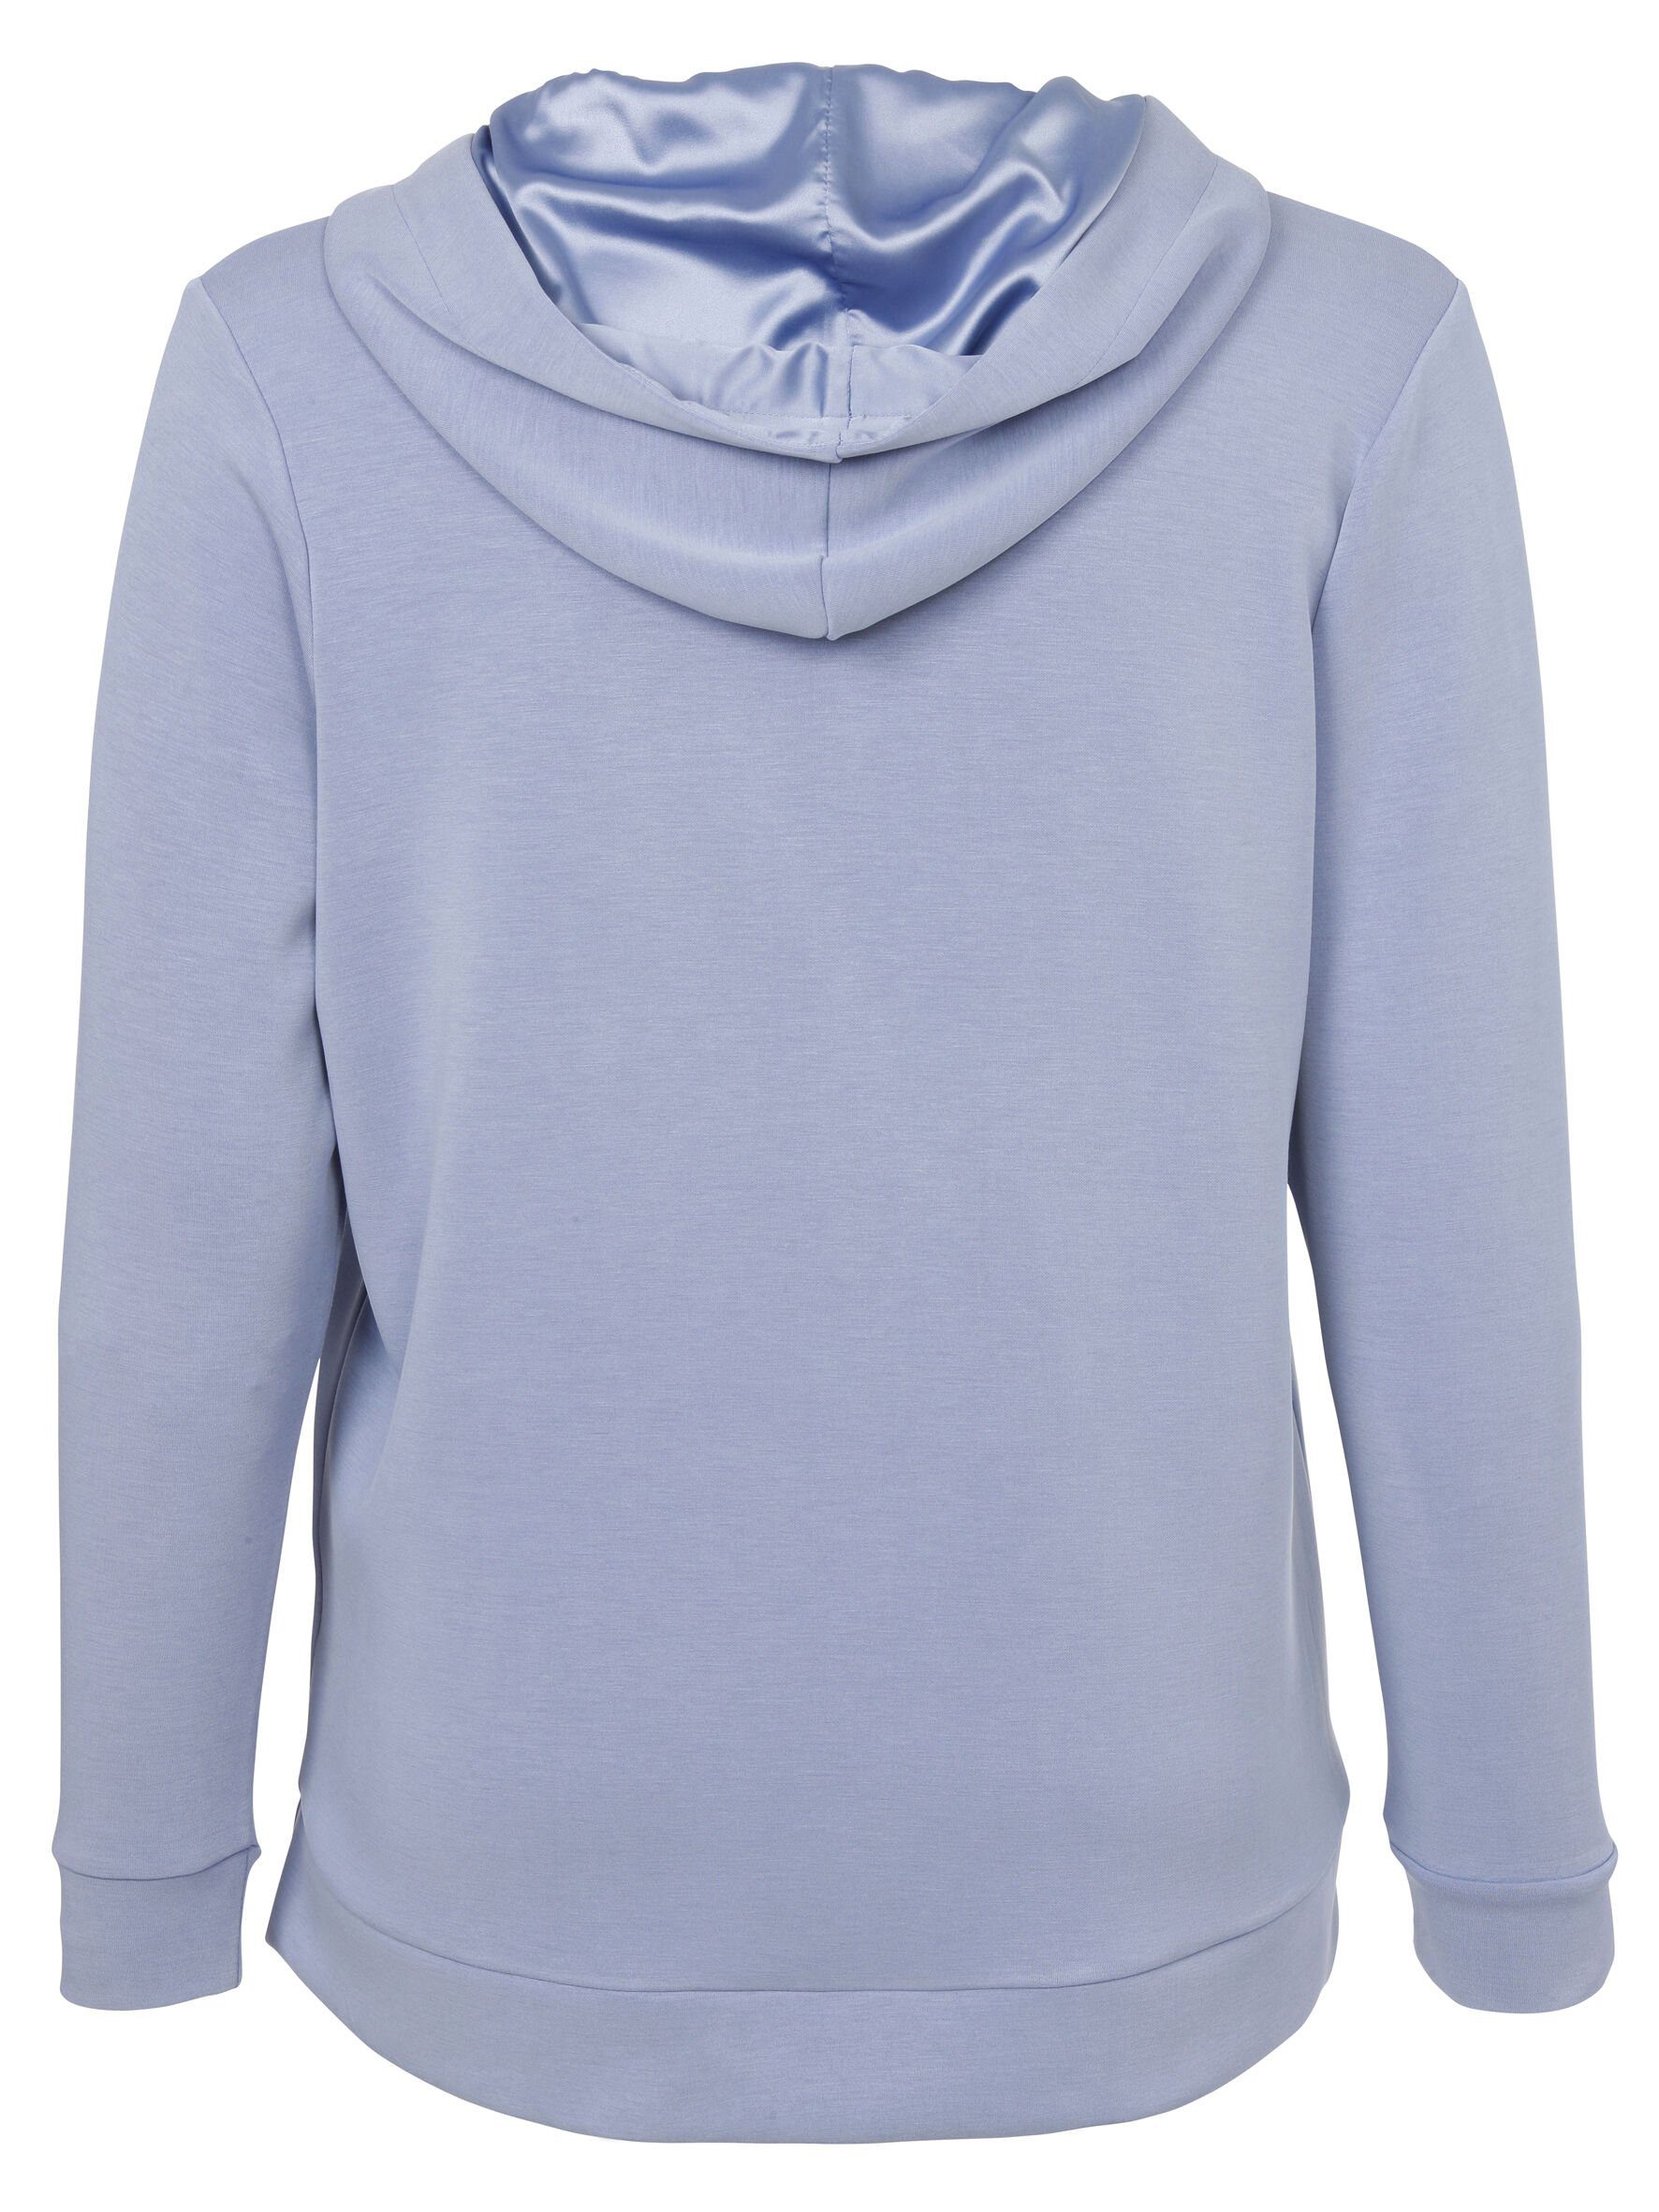 Sweatshirt mit Stil APPIA DUE unifarbenem Sportives Viskosemischung Sweatshirt VIA in rauchblau hochwertigen